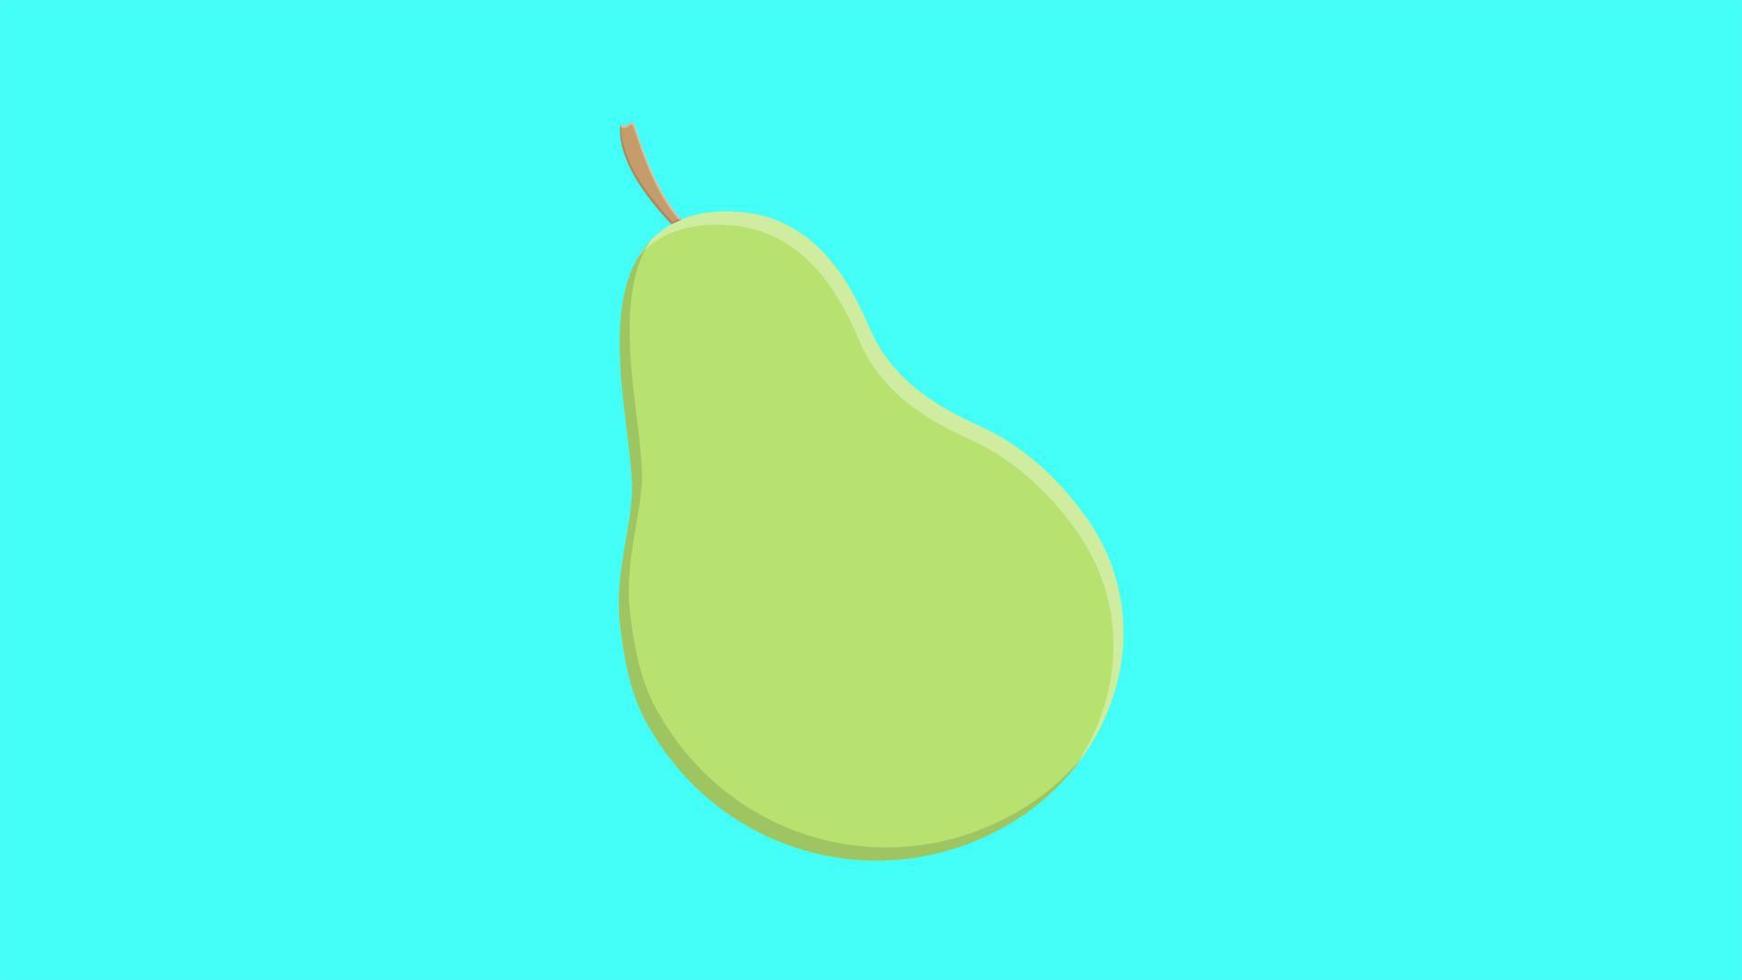 illustration vectorielle. vert poire sur fond turquoise. dessin mignon avec des fruits. poire avec une brindille sur la photo. fruits sains vecteur